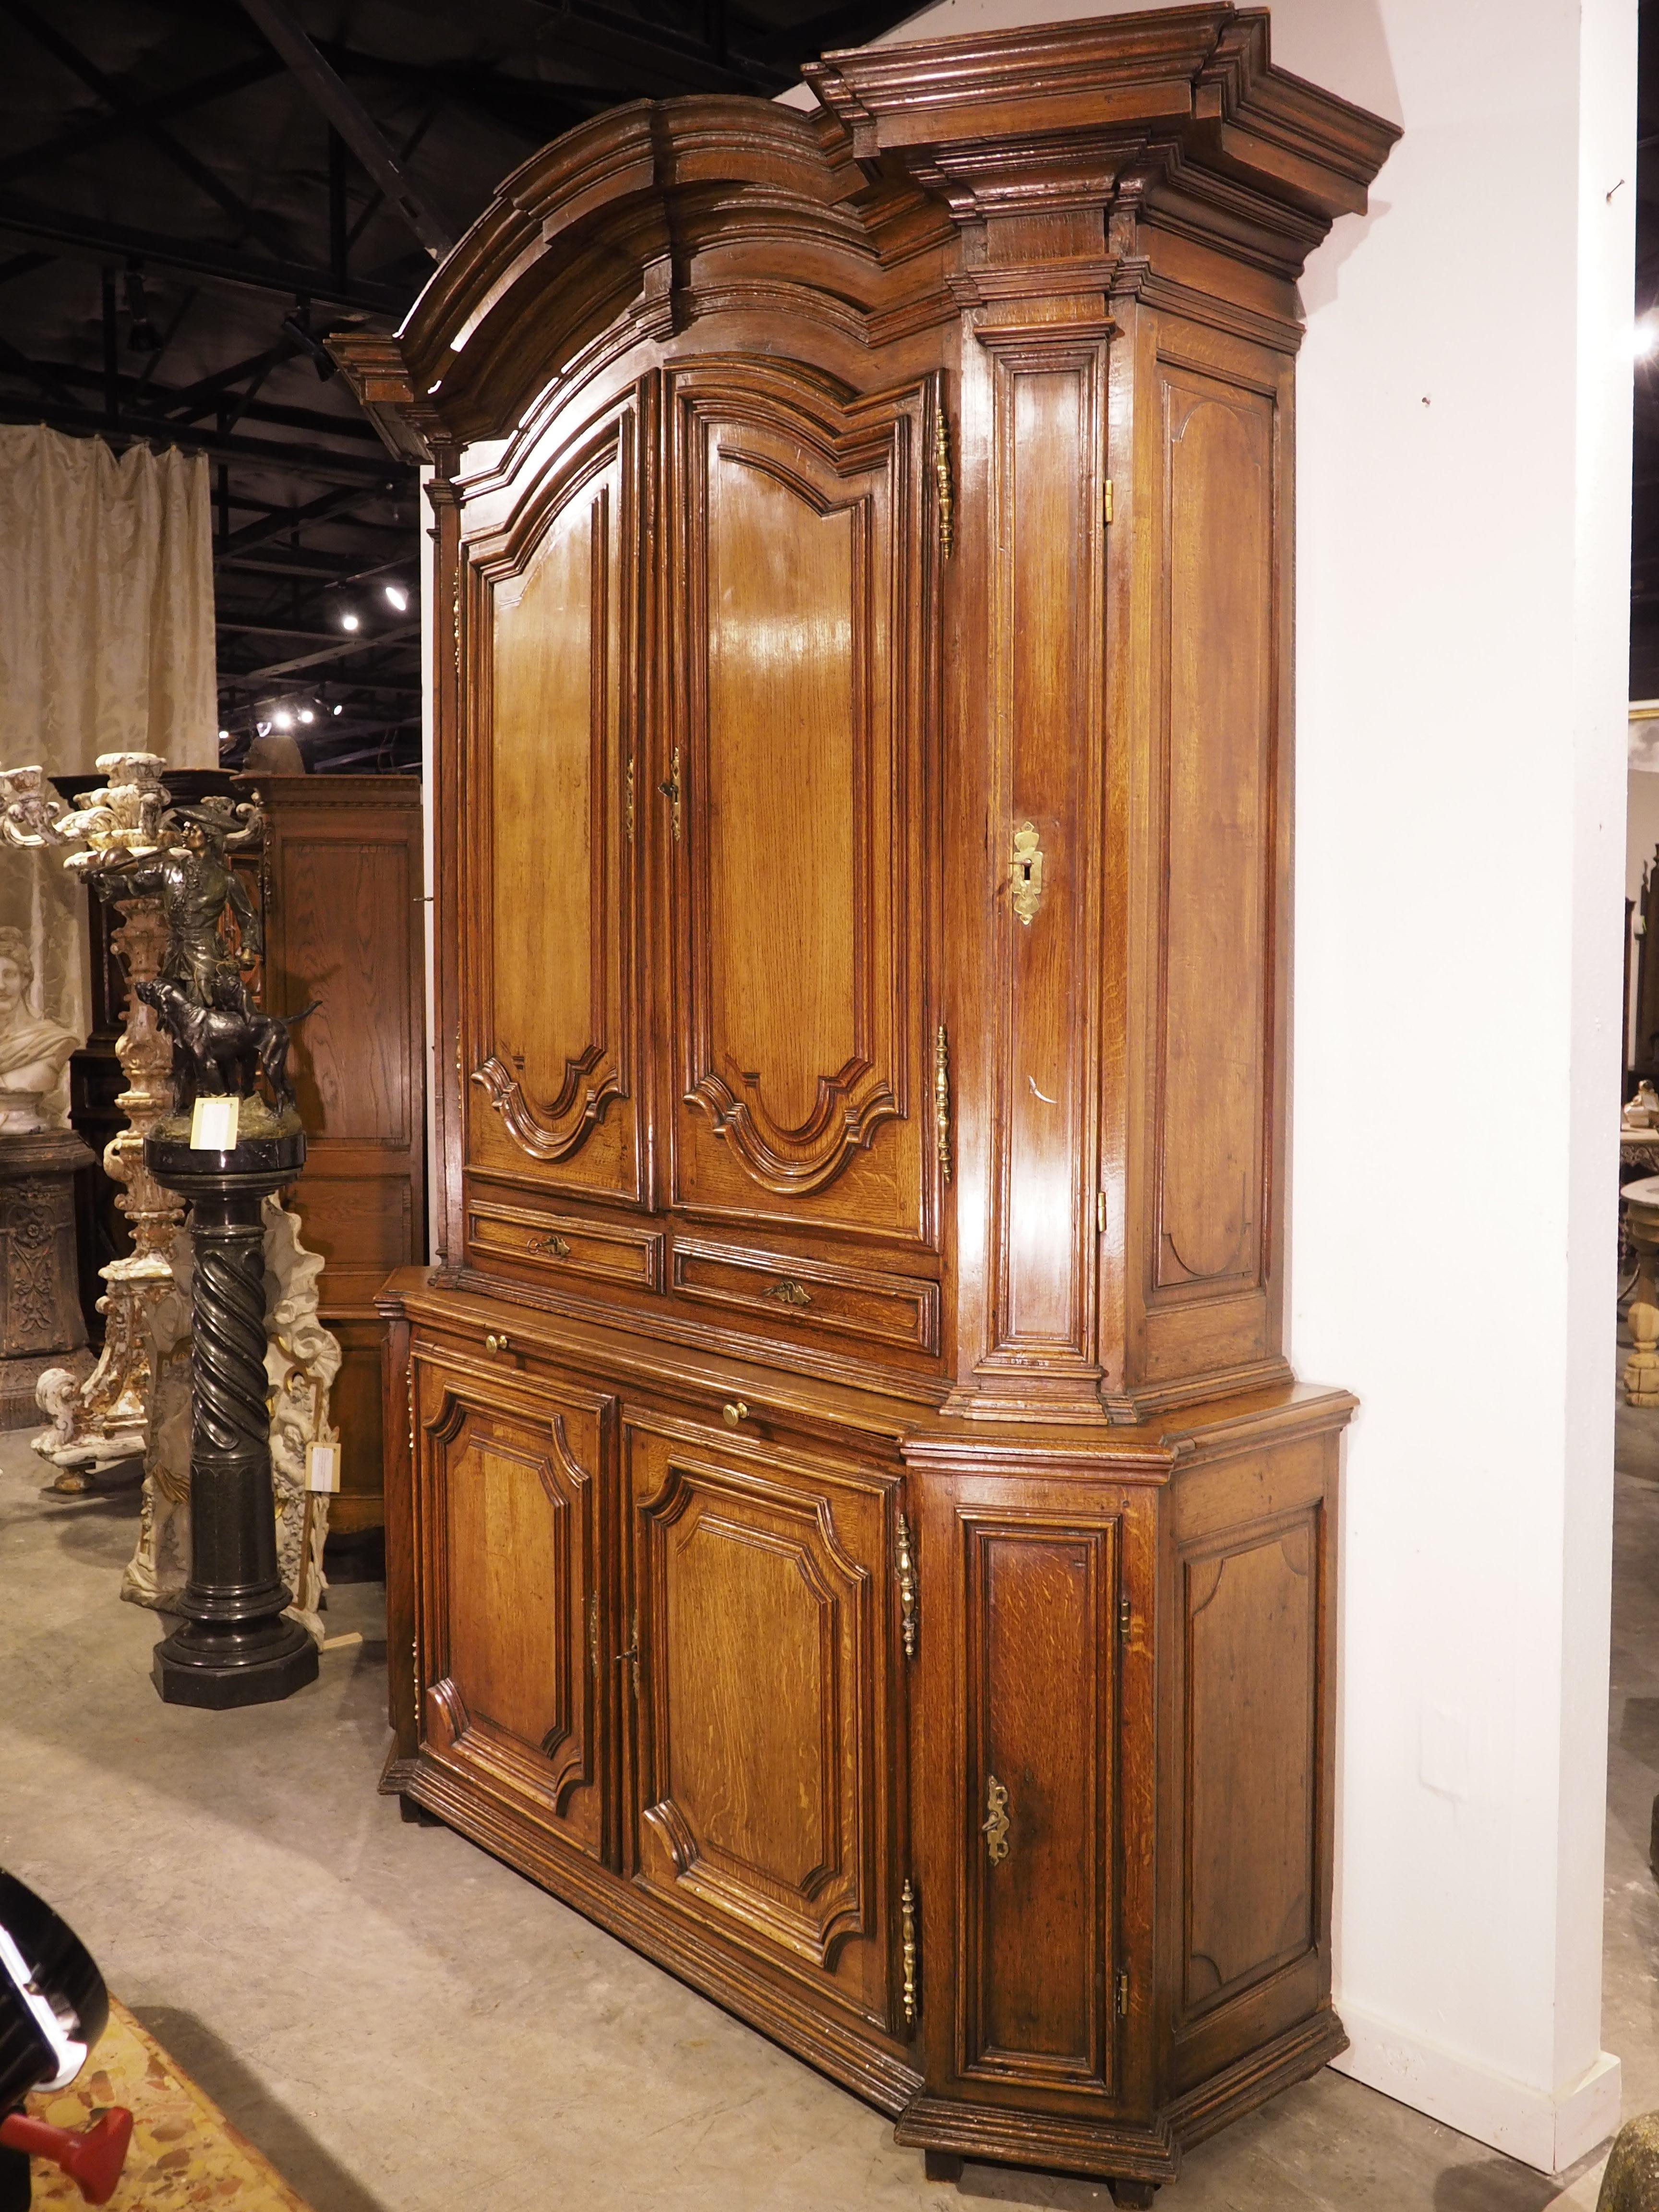 Sculpté à la main en France vers 1700, cet exceptionnel buffet deux corps en chêne offre un vaste espace de rangement avec huit portes, deux tiroirs et un plateau coulissant. Toutes les portes sont équipées de serrures fonctionnelles, actionnées par